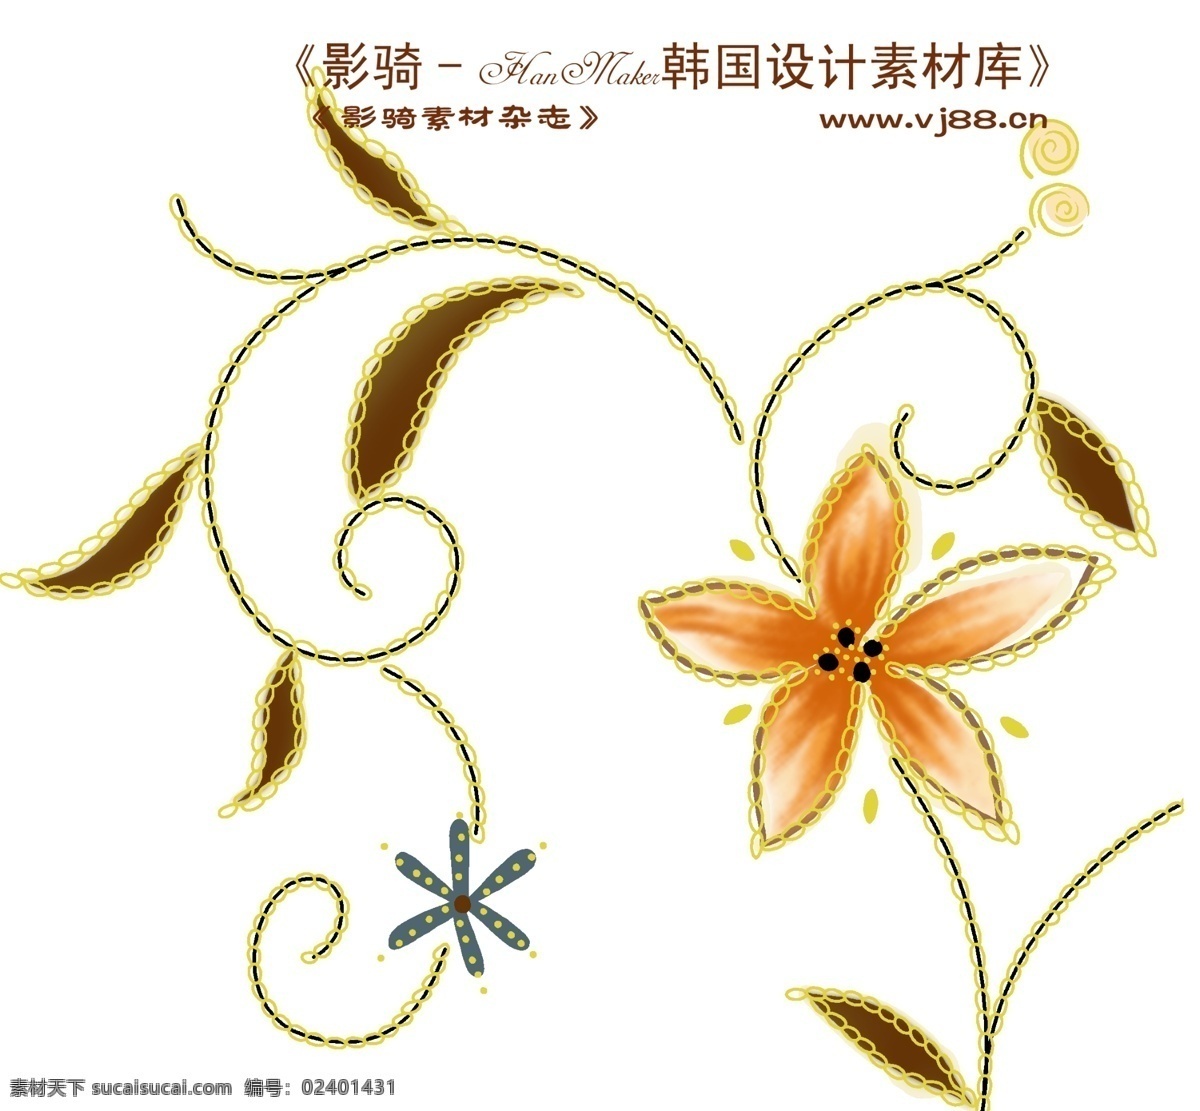 花纹 花朵 hanmaker 韩国 设计素材 库 花纹花朵 装饰修饰 家居装饰素材